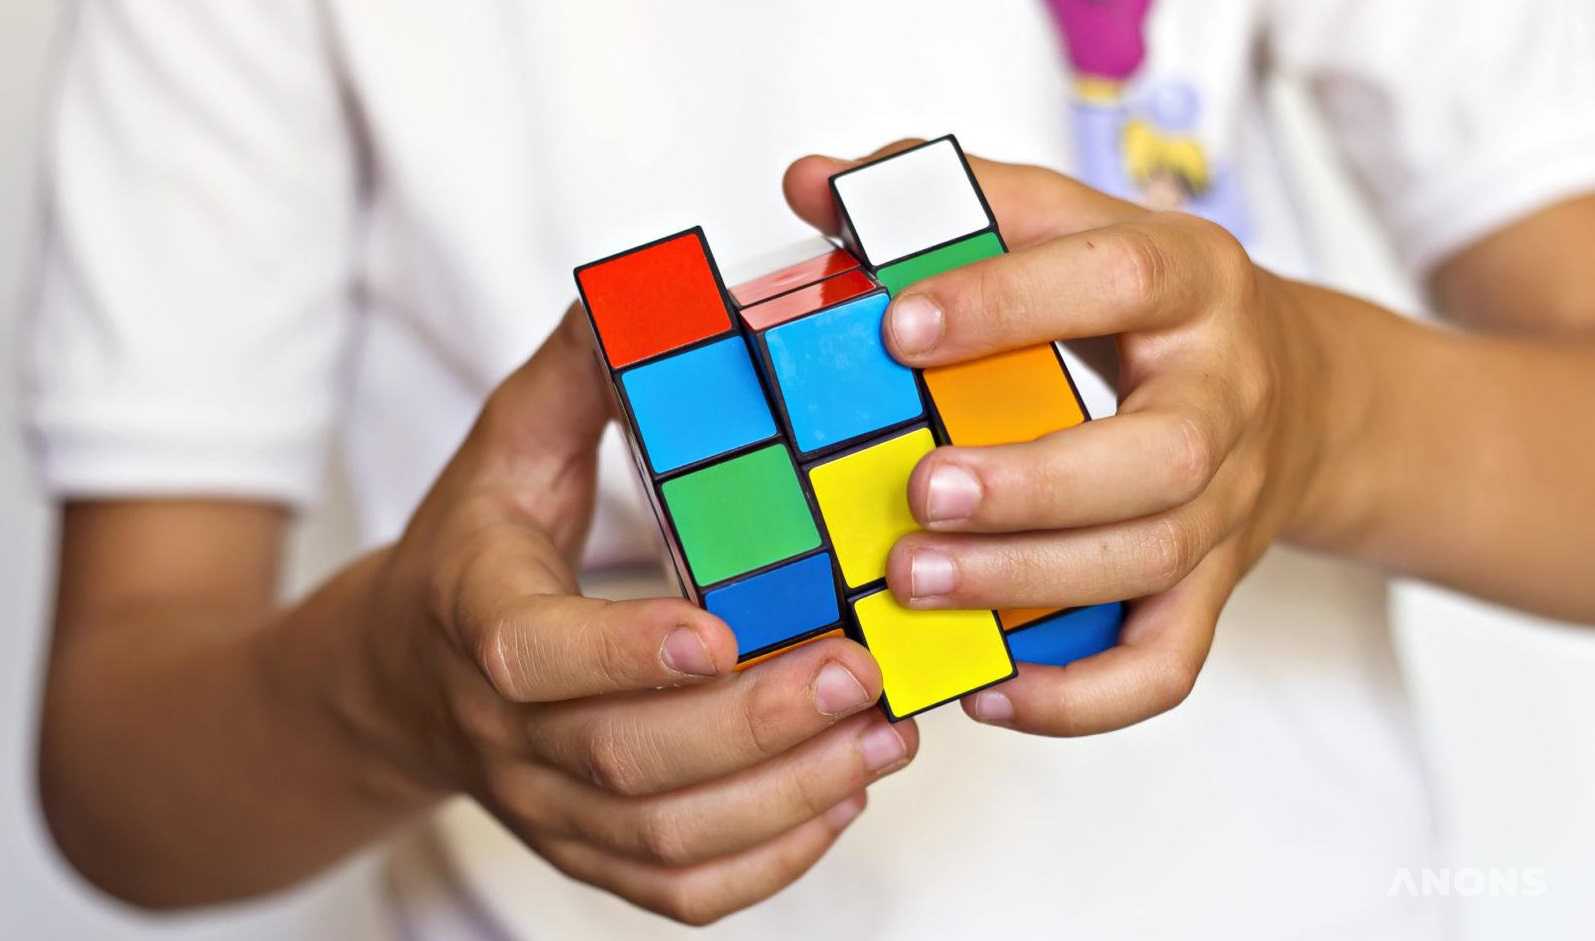 Арт-галерея Human House запускает занятия по скоростной сборке кубика Рубика для детей